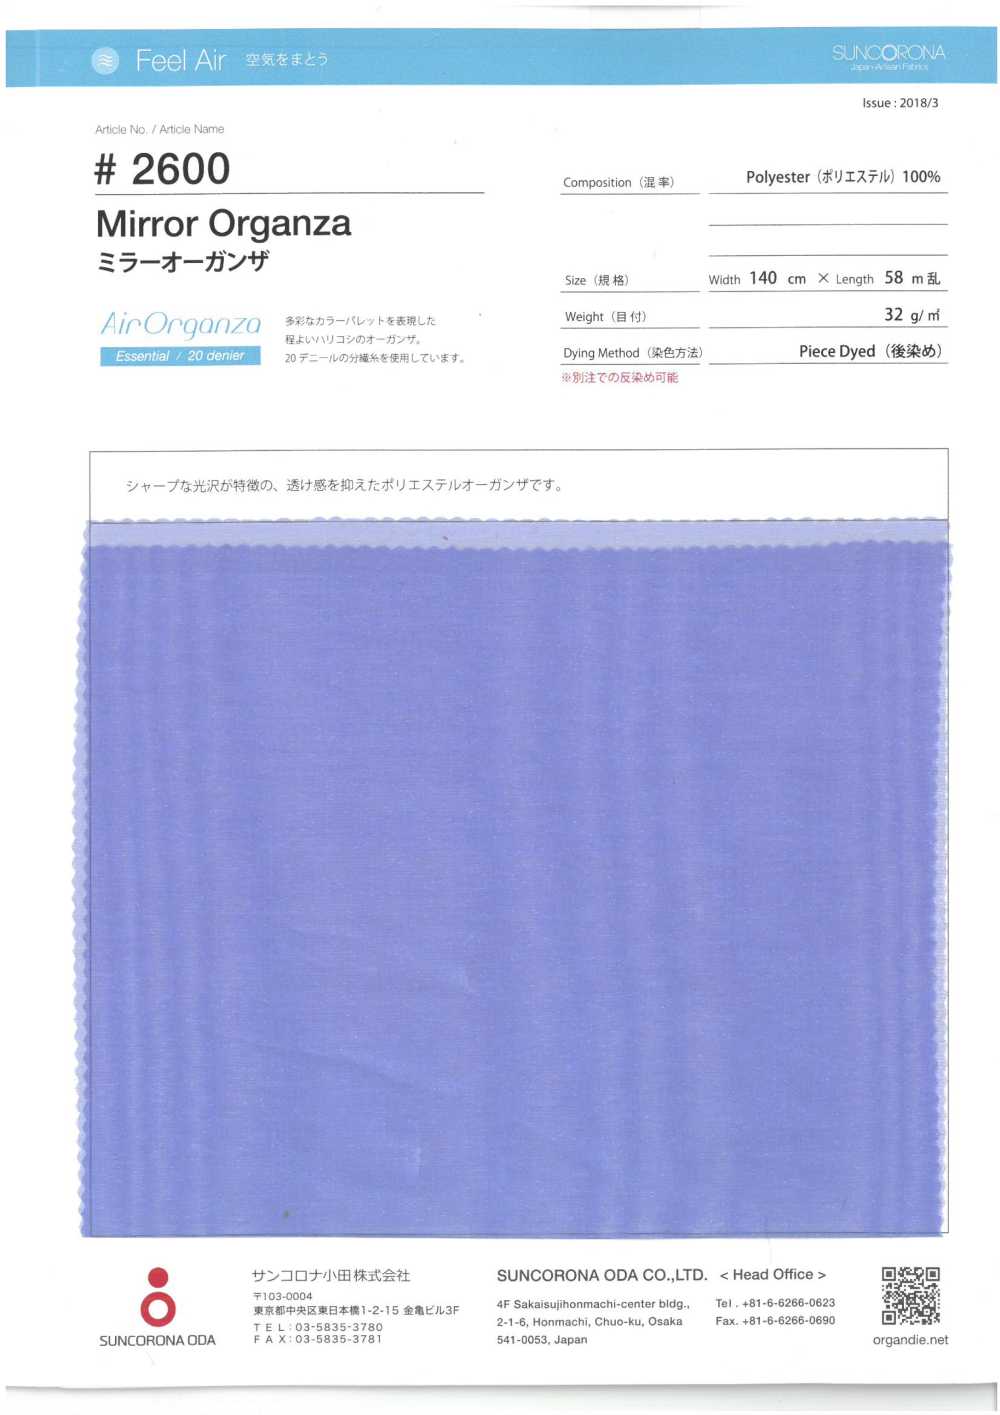 2600 Organdí De Cristal[Fabrica Textil] Suncorona Oda